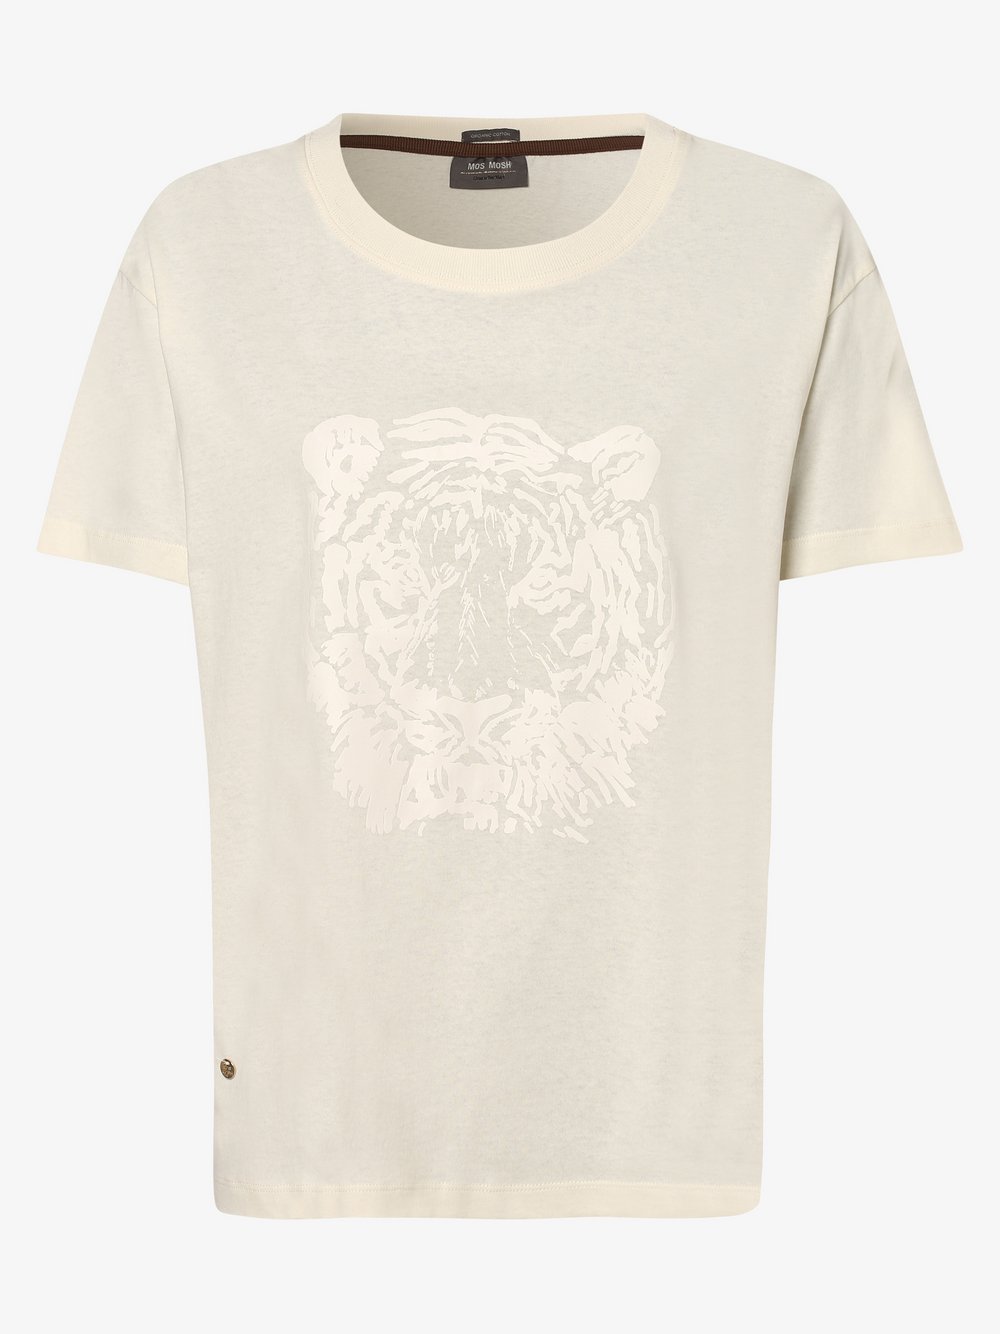 MOS MOSH - T-shirt damski – Tiger, biały